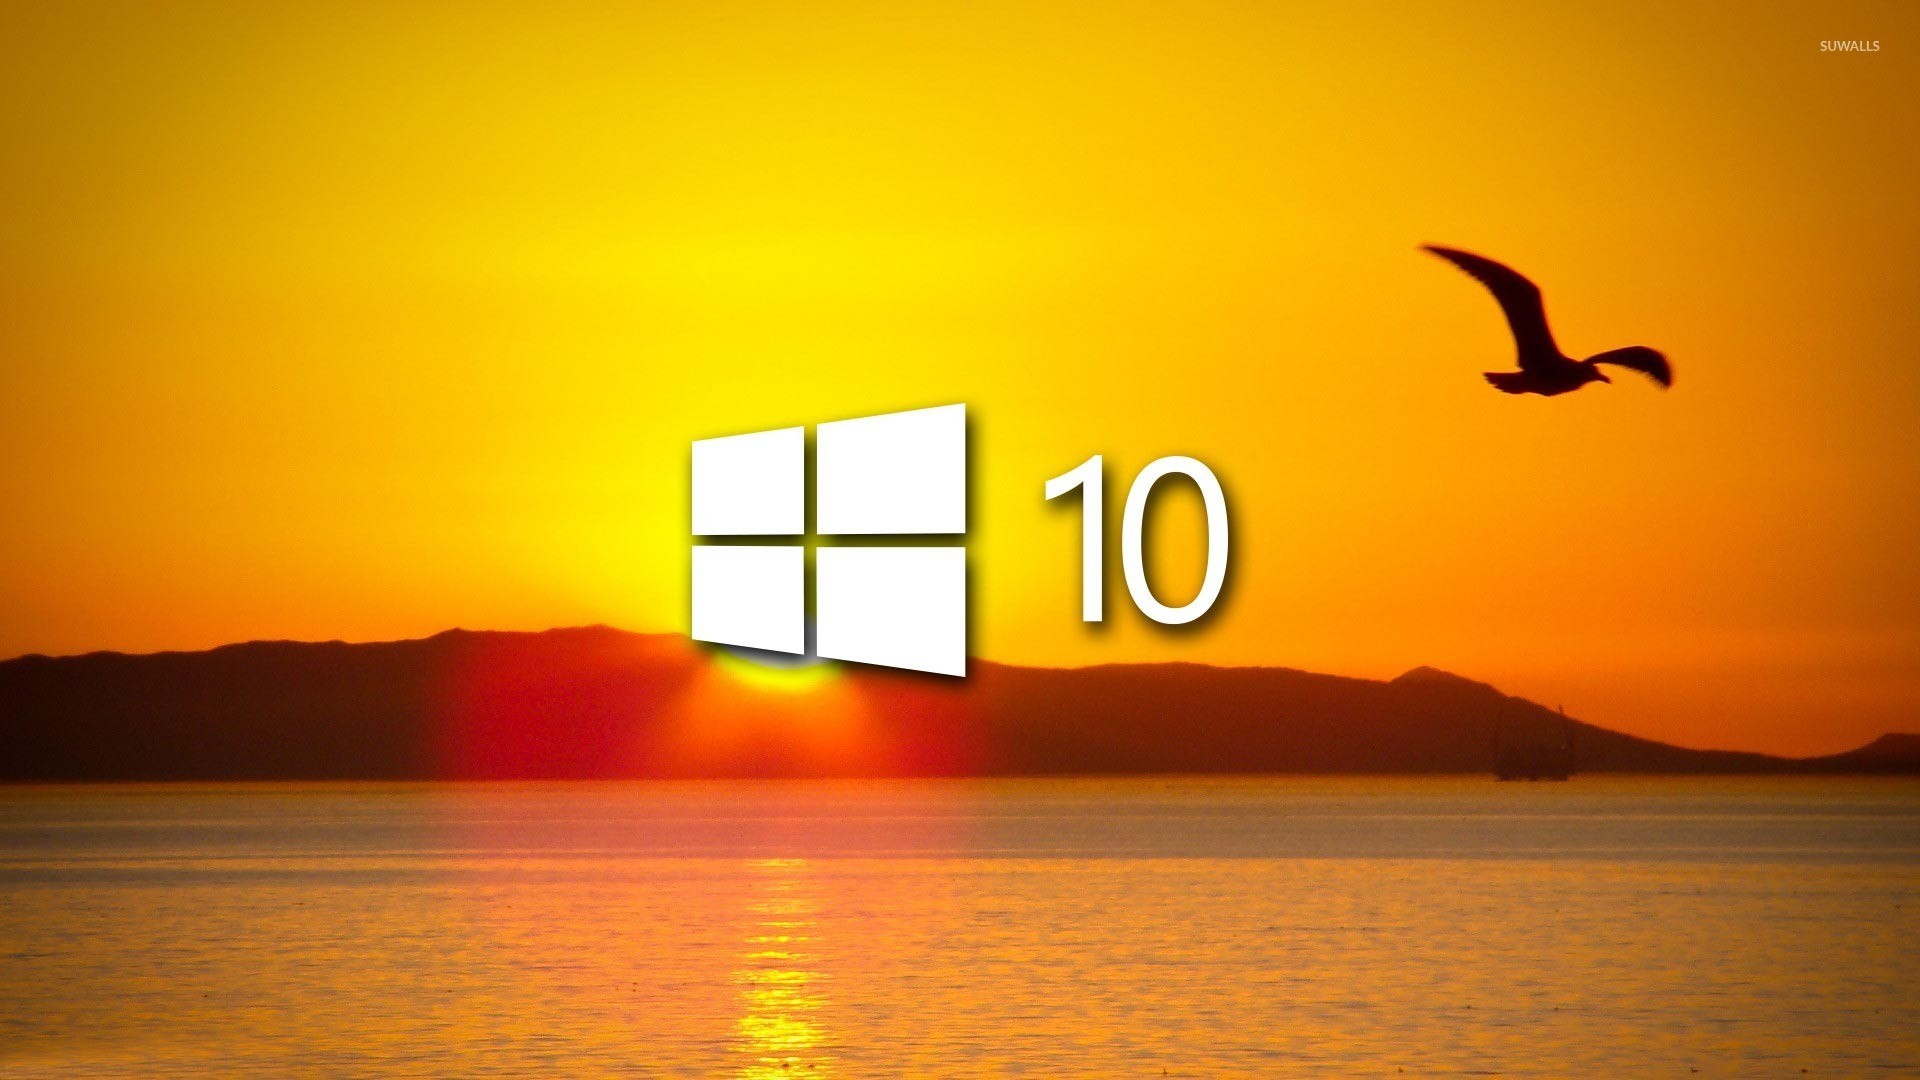 Desktop Hintergrund Windows 10 Gpo Hintergrundbilder Hd Hot Sex Picture